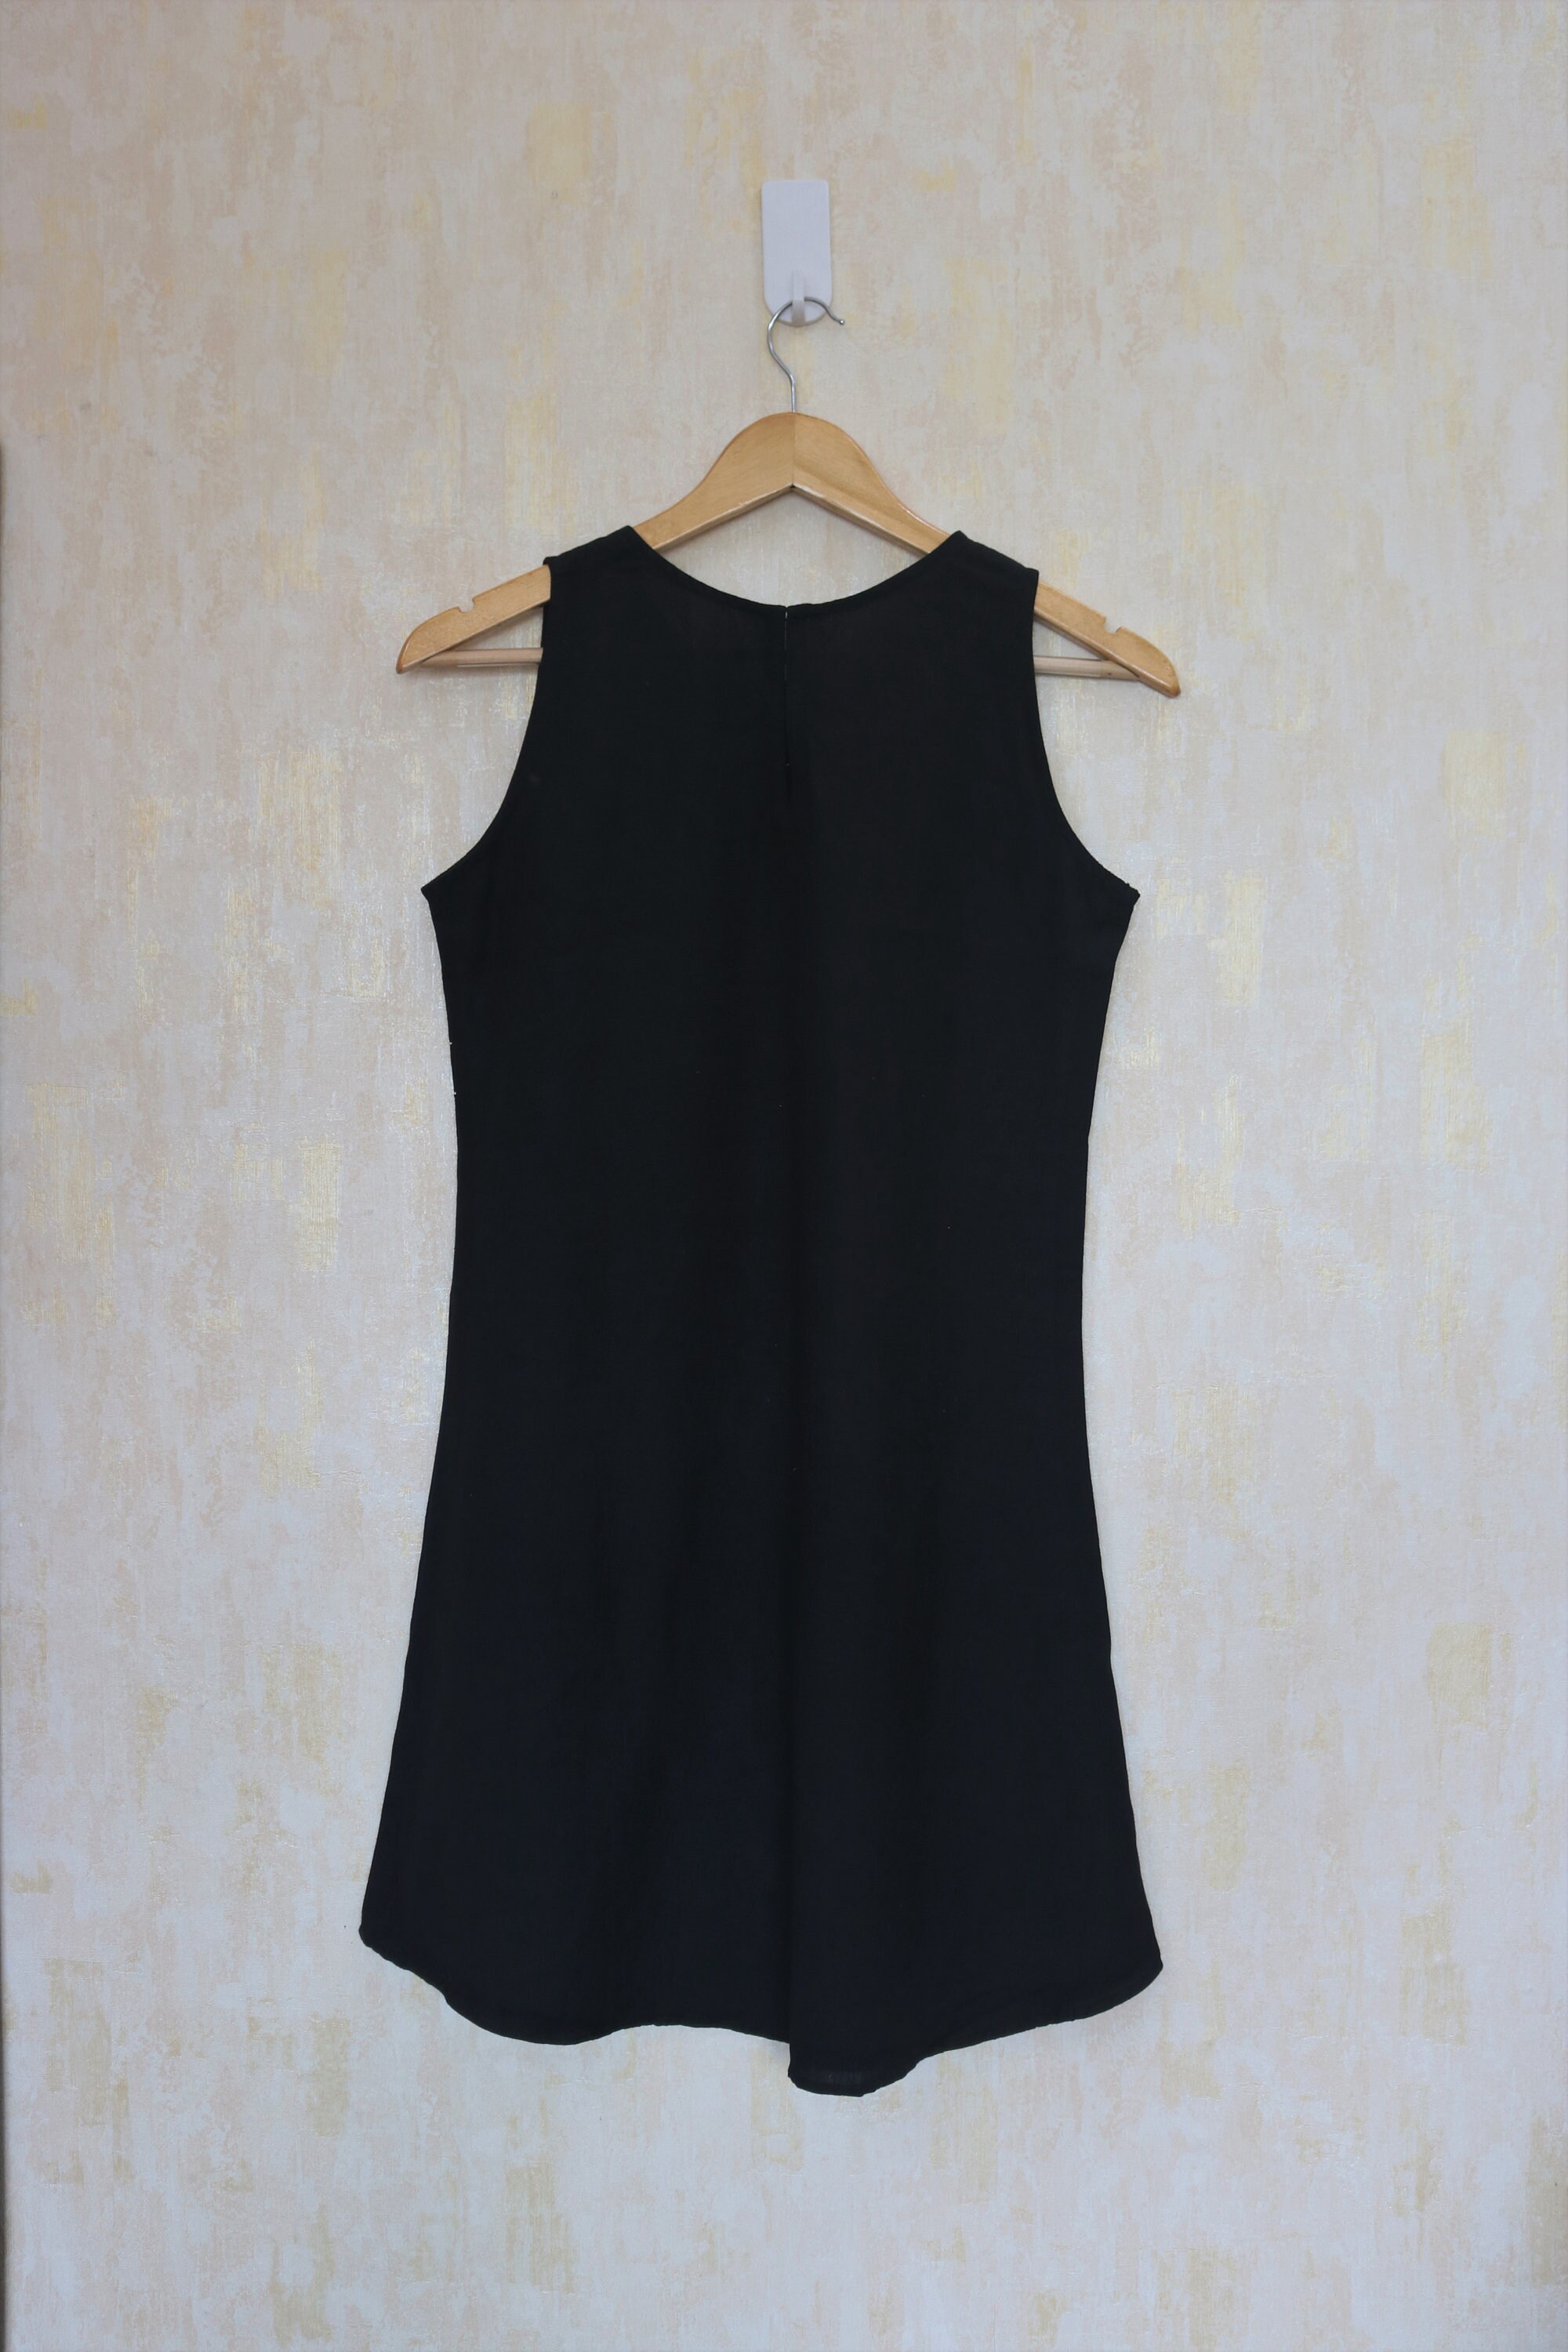 Shift dress for women Black linen dress Sleeveless linen | Etsy